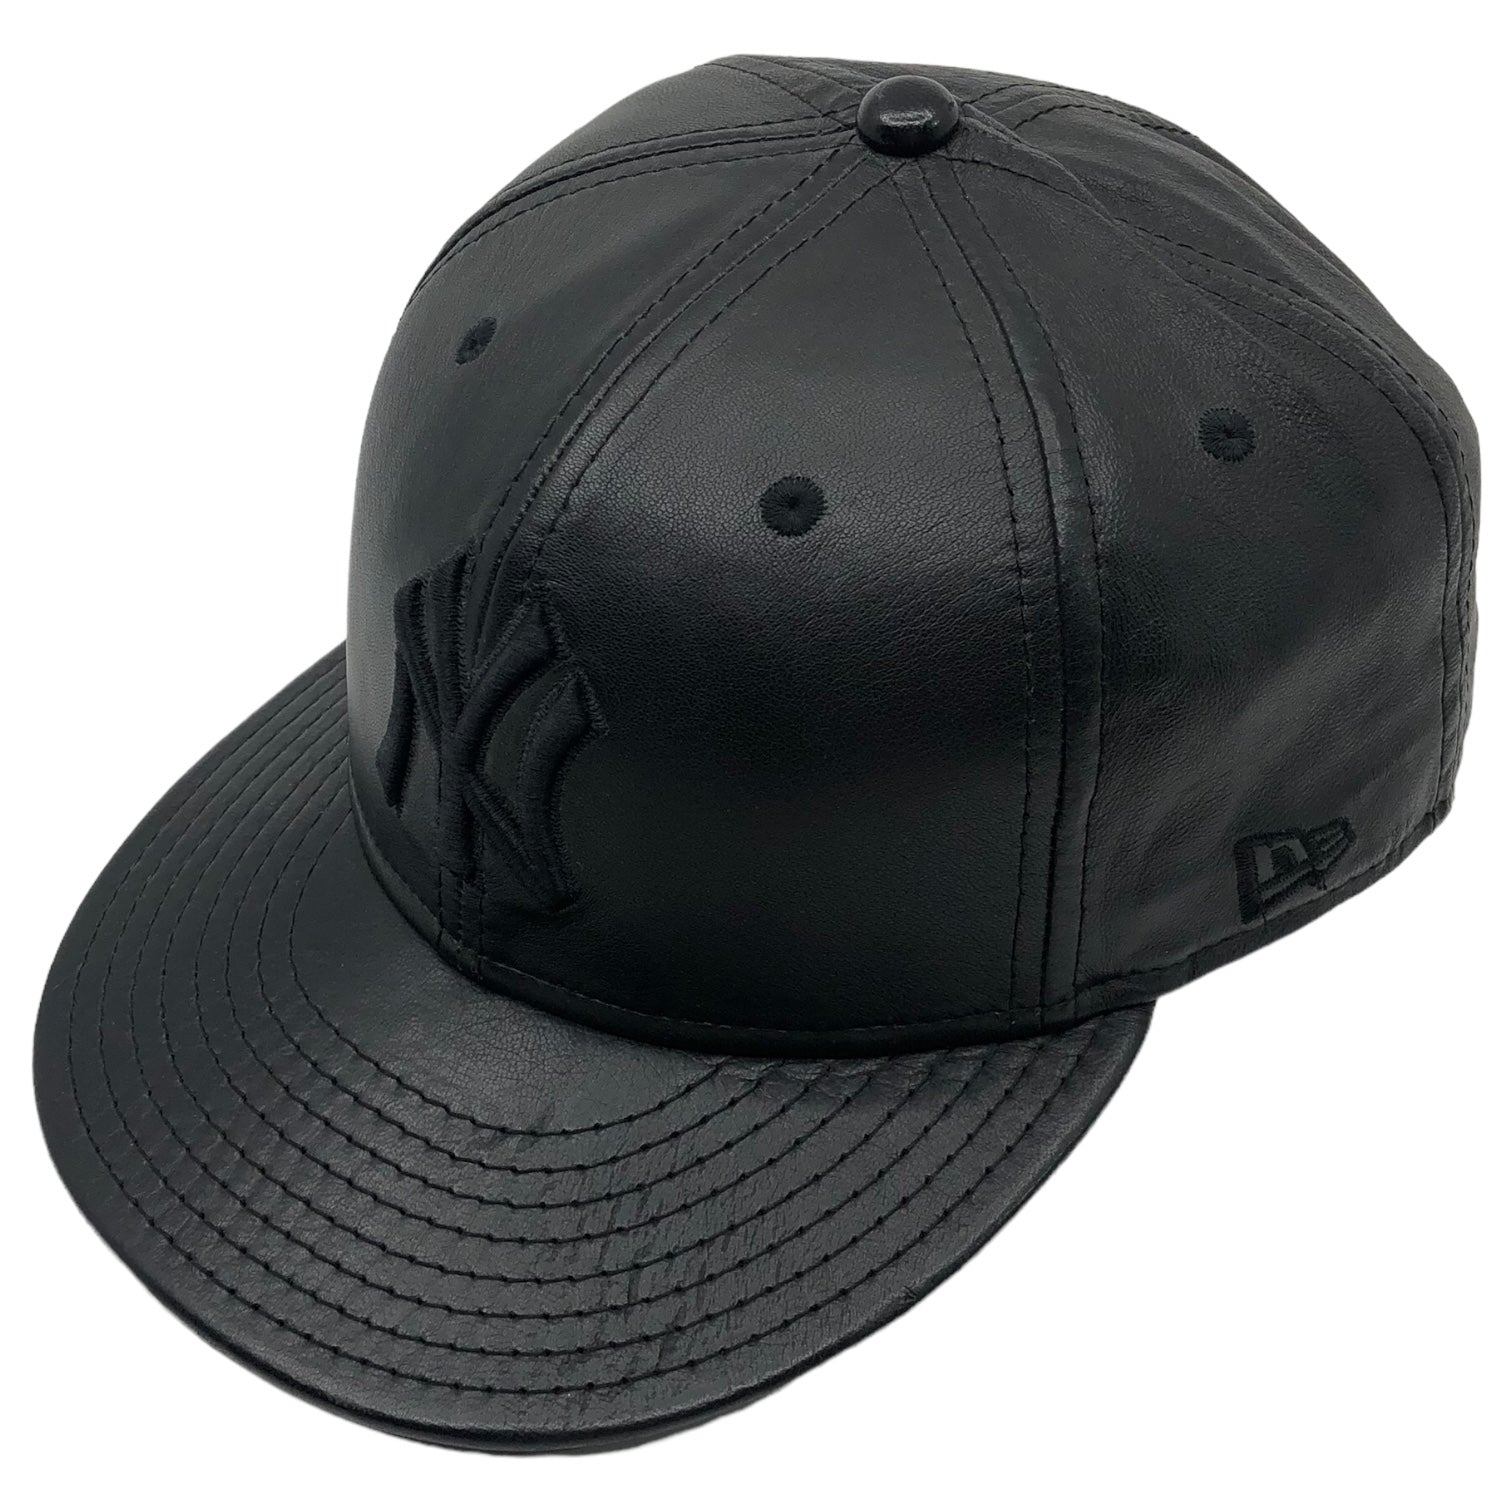 NEW ERA(ニューエラ) all leather baseball cap オールレザー ベースボール キャップ 63cm ブラック